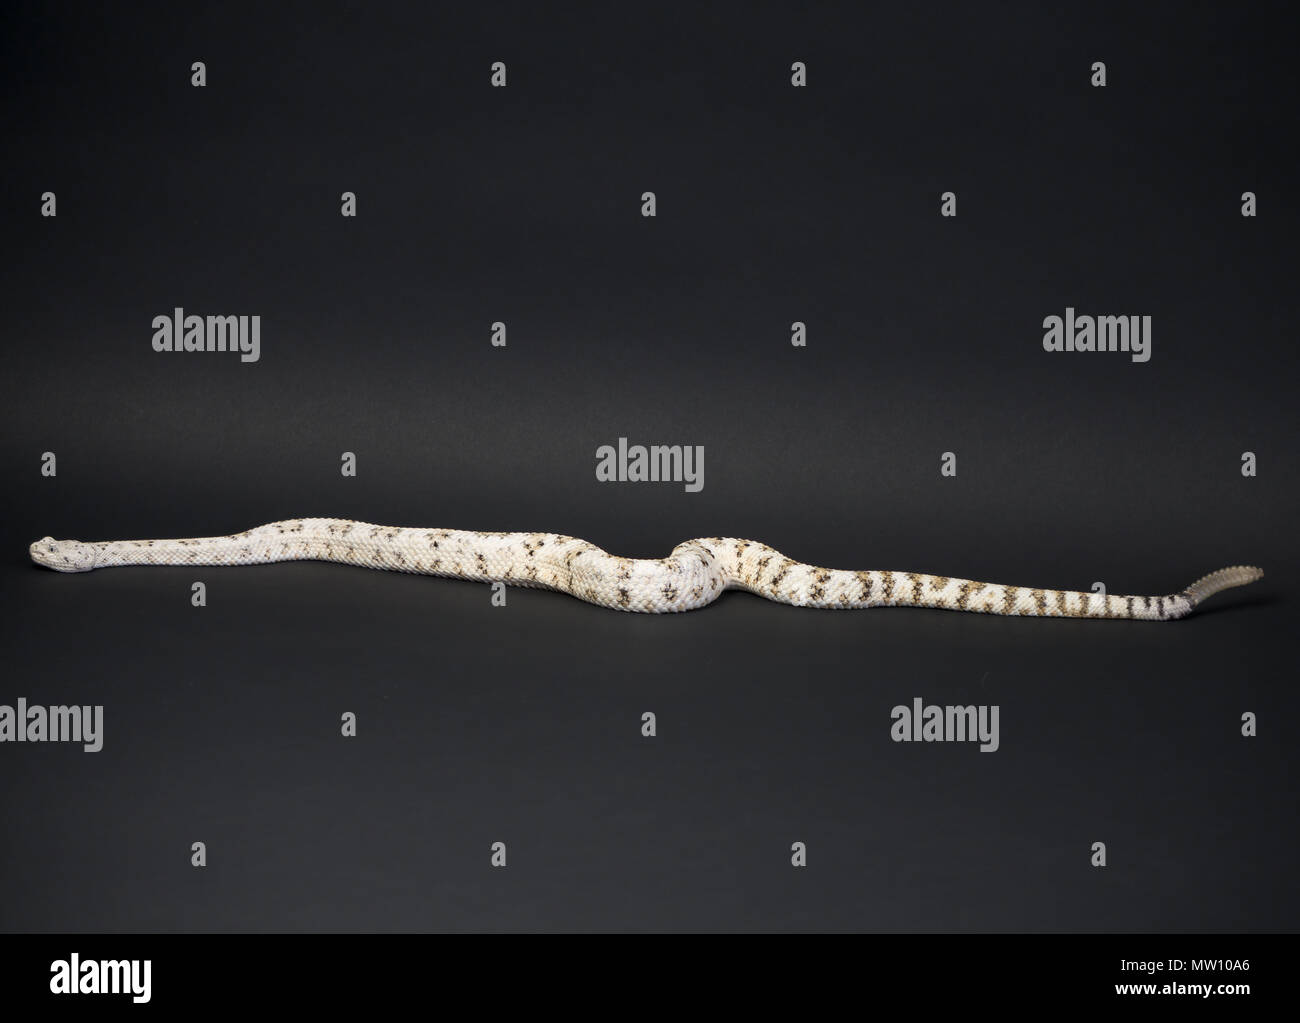 Rattlesnake on Black Background Stock Photo